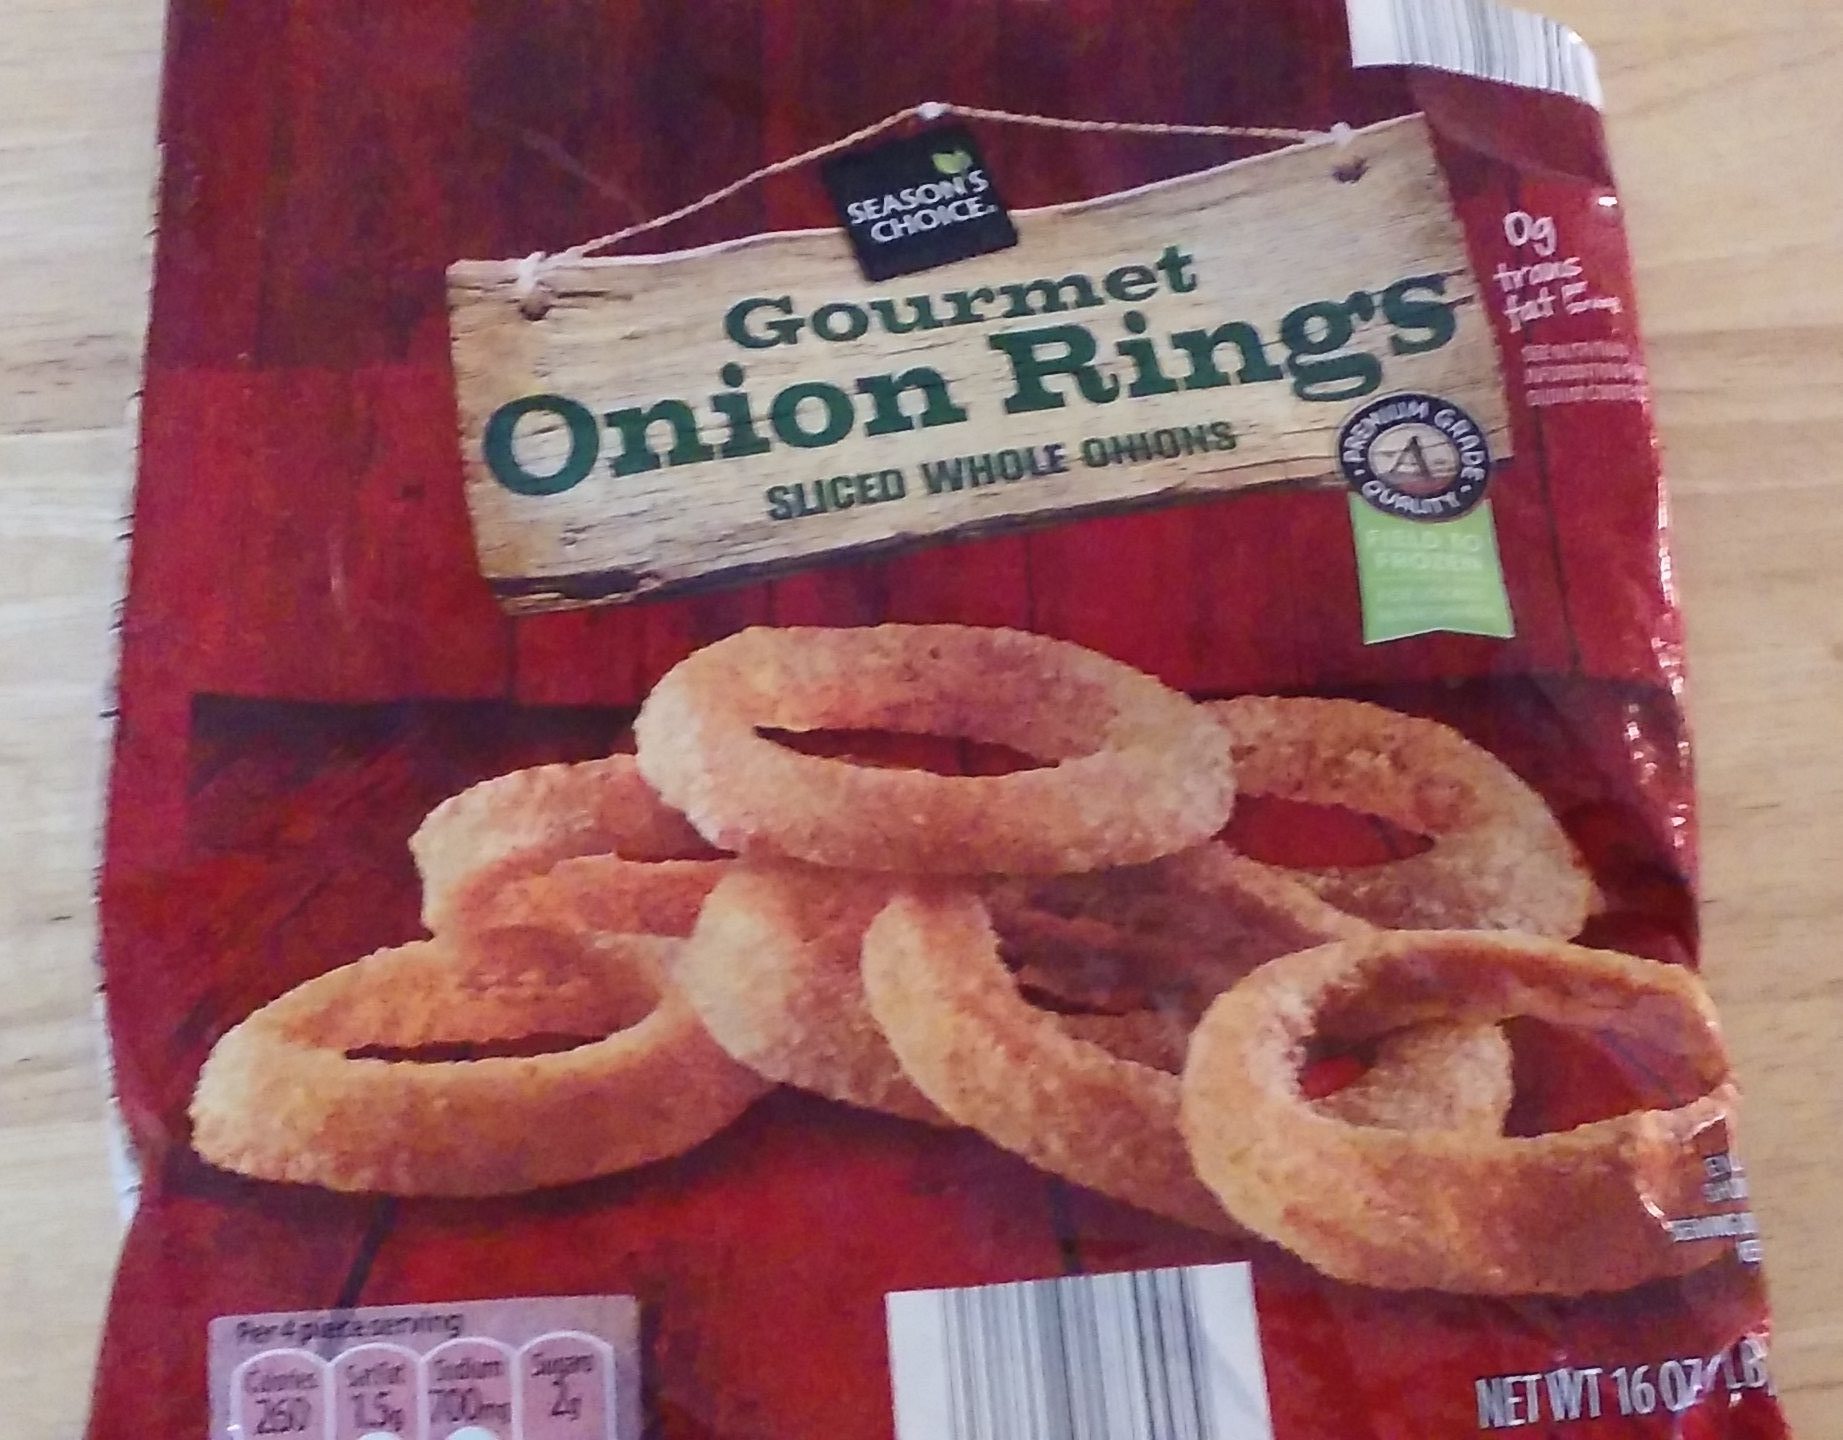 Best Frozen Onion Rings Brands